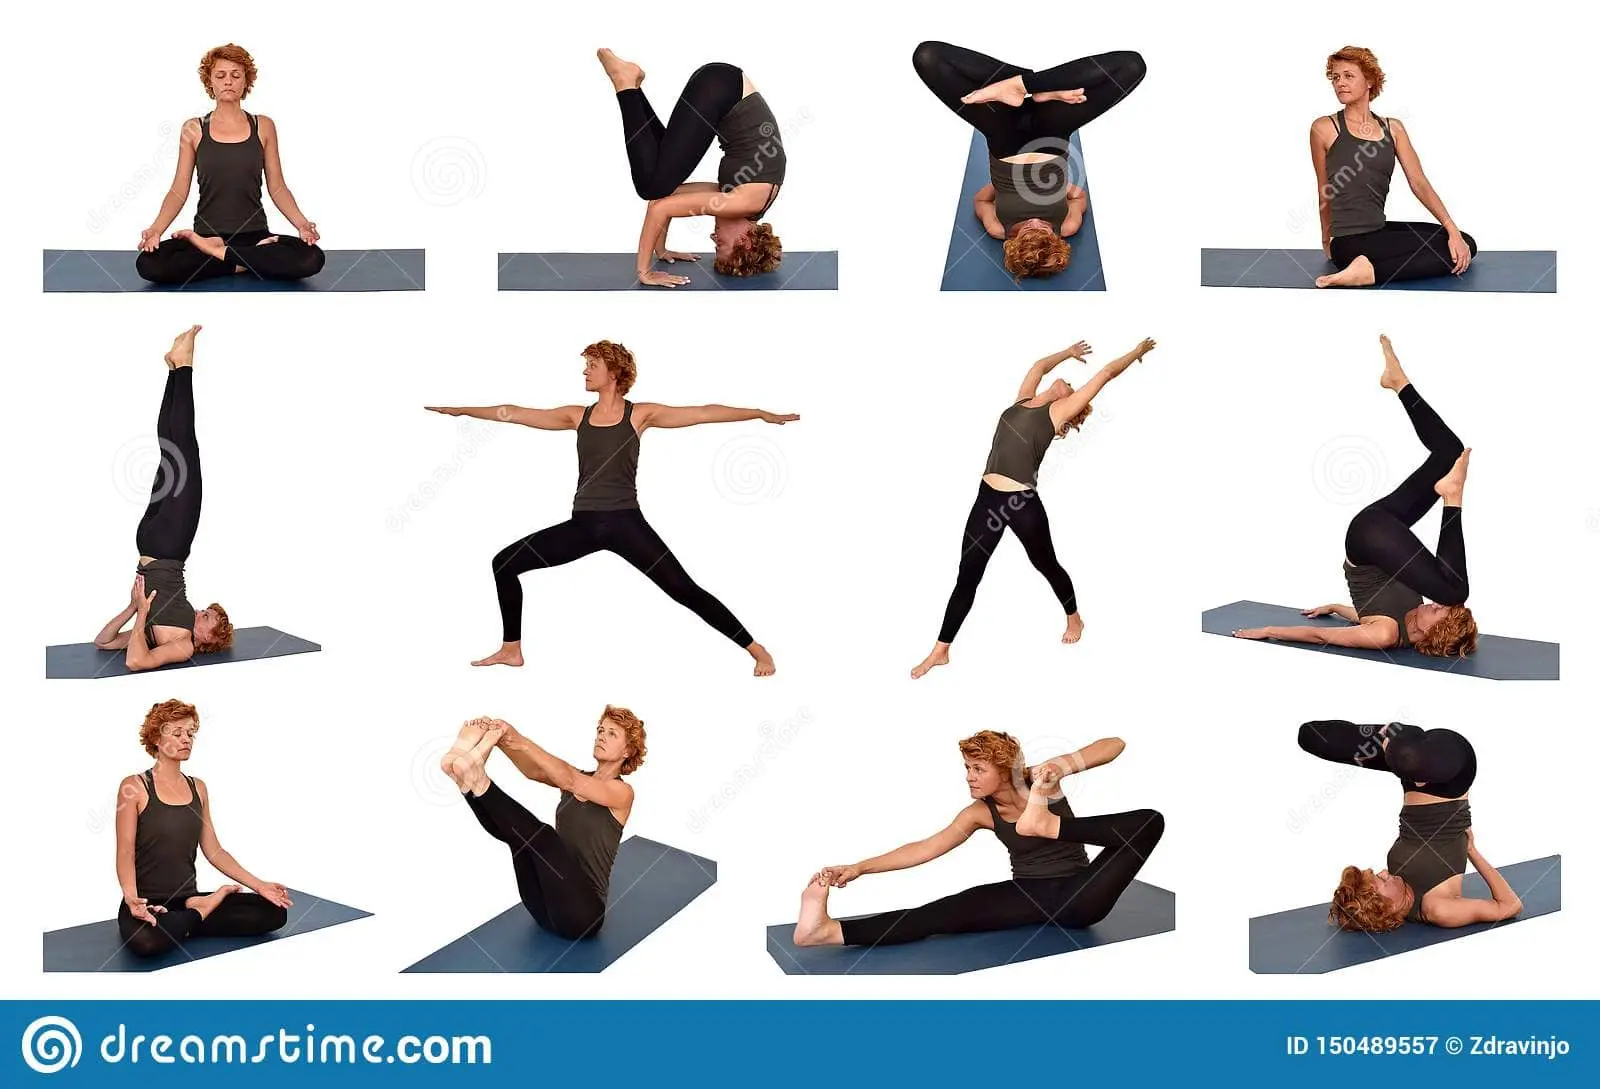 ejercicios de yoga para la columna vertebral - Qué deporte es el más aconsejable para el cuidado de la columna vertebral